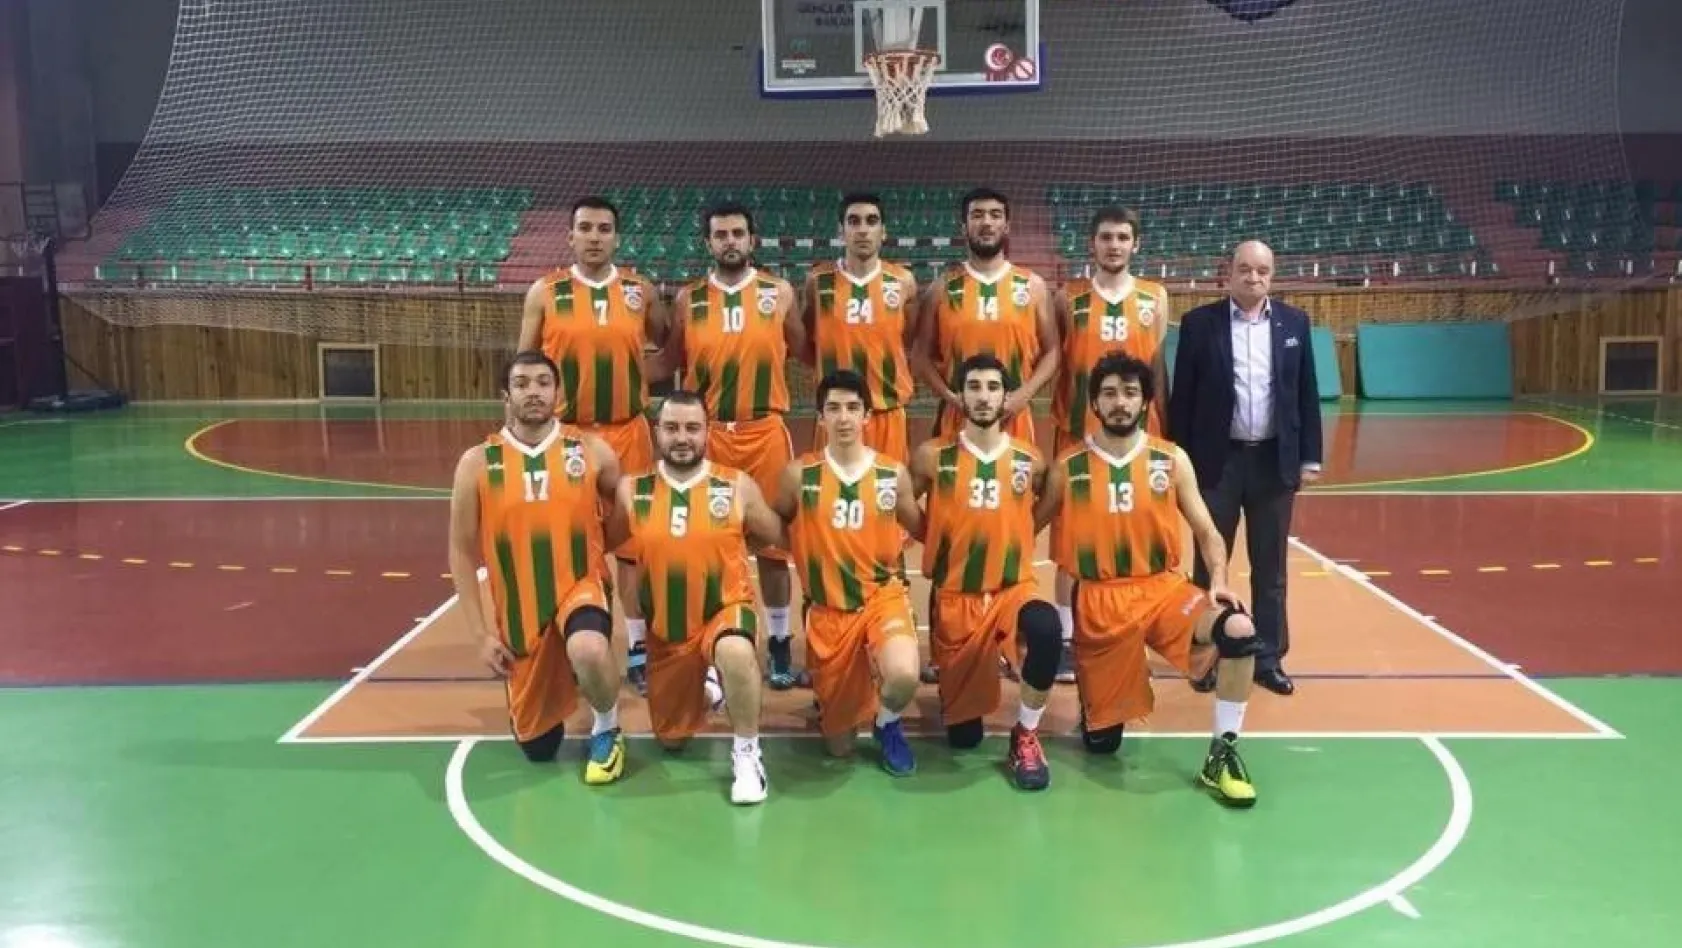 Büyükşehir Basketbol Takımı 6. bölgede mücadele edecek
